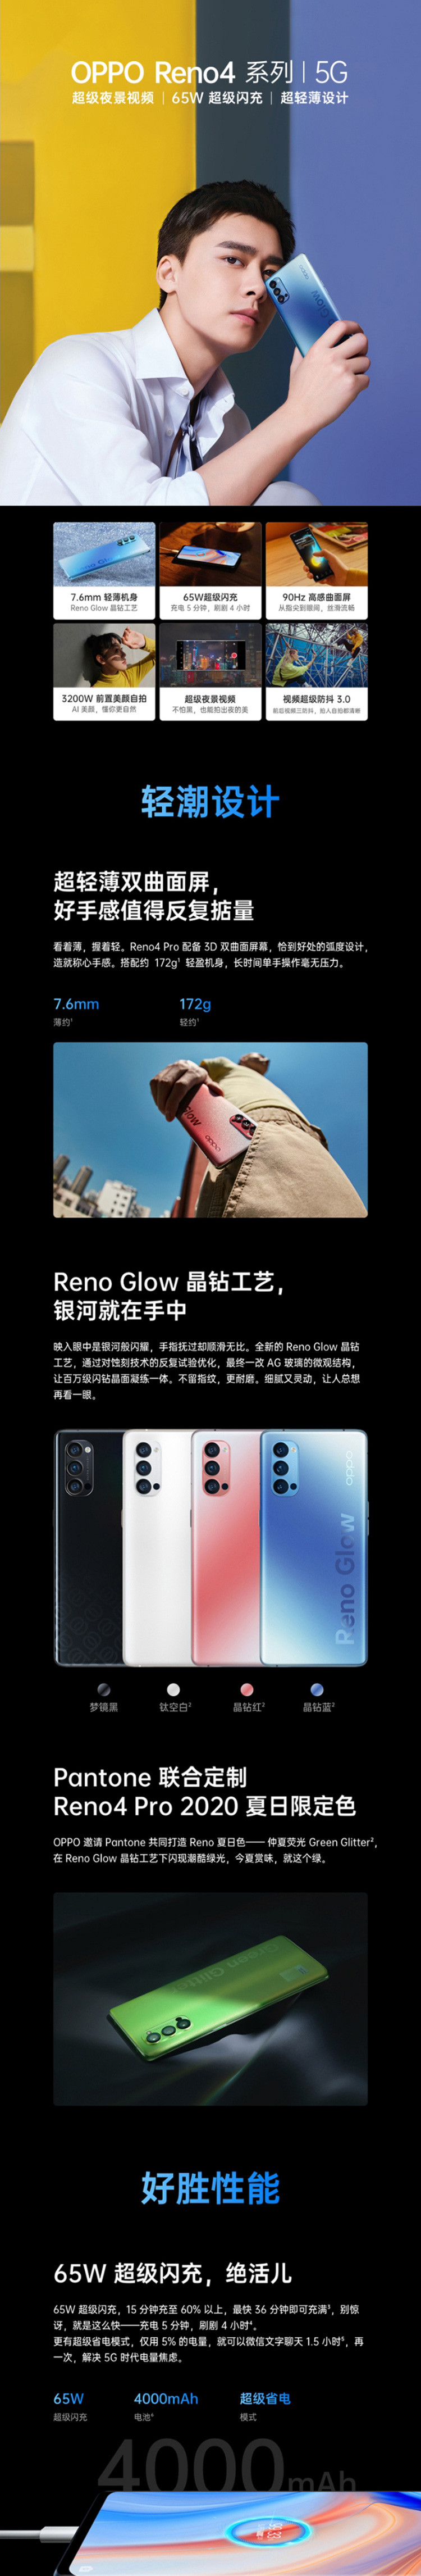 OPPO Reno4 Pro 8GB+128GB 5G全网通手机